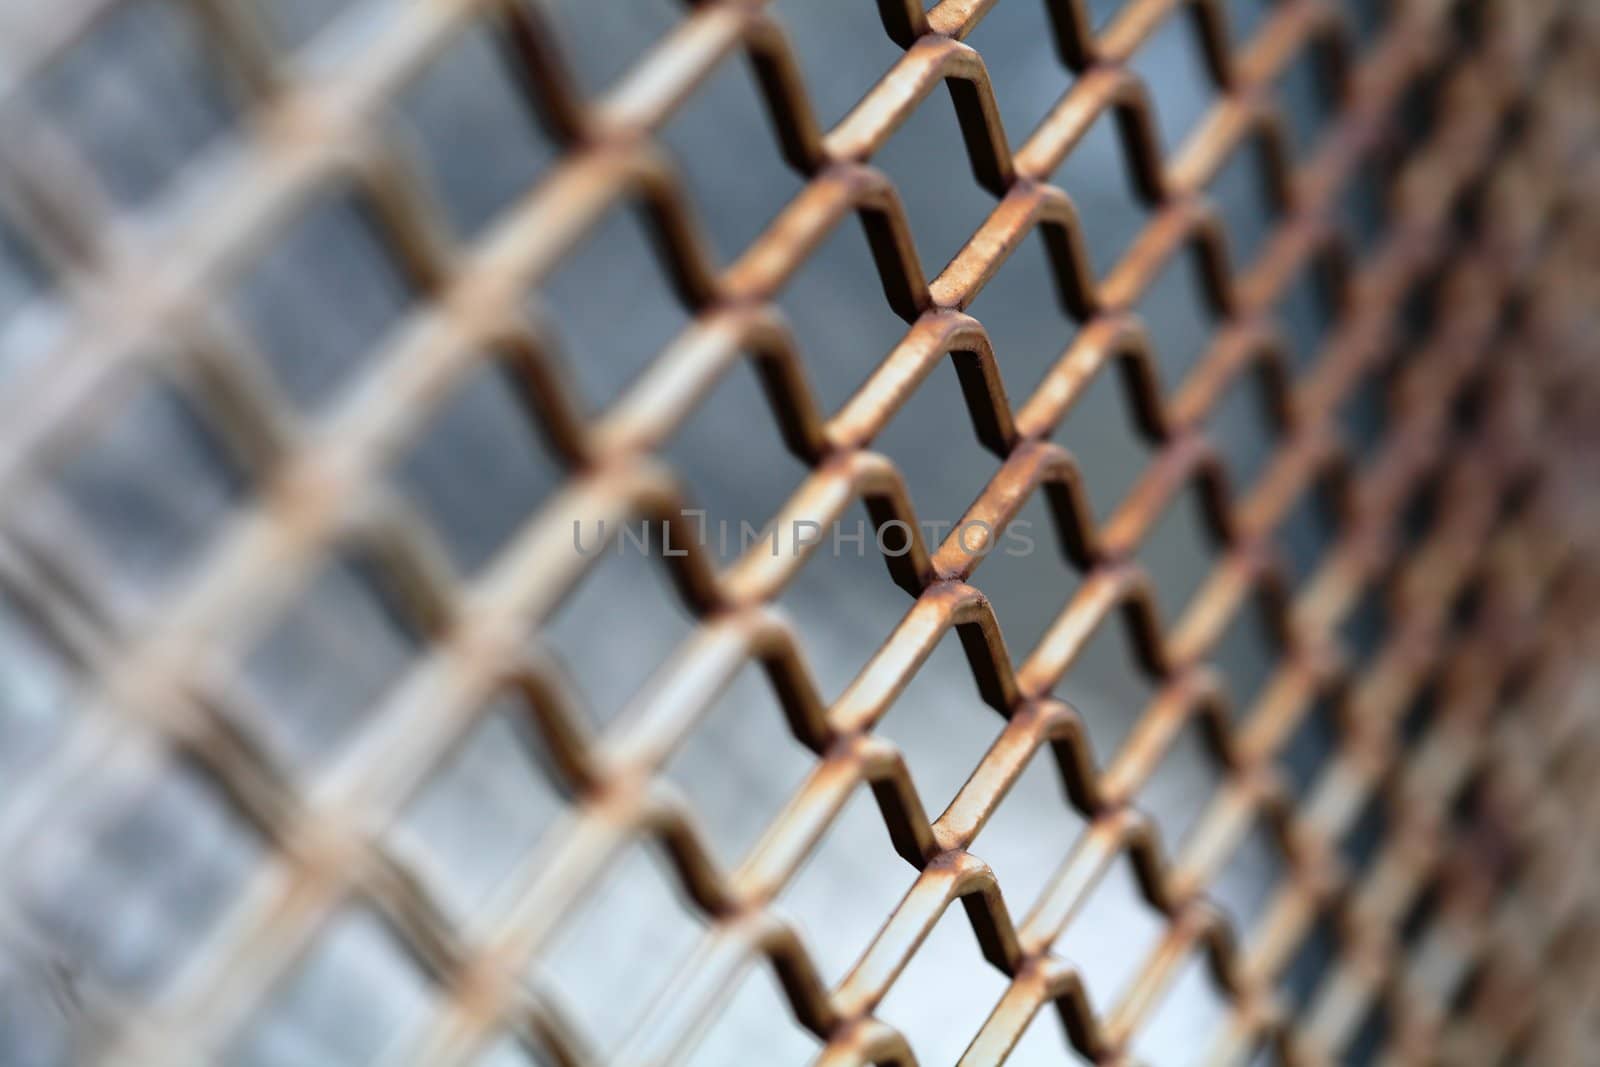 Rusty metallic net by Stocksnapper